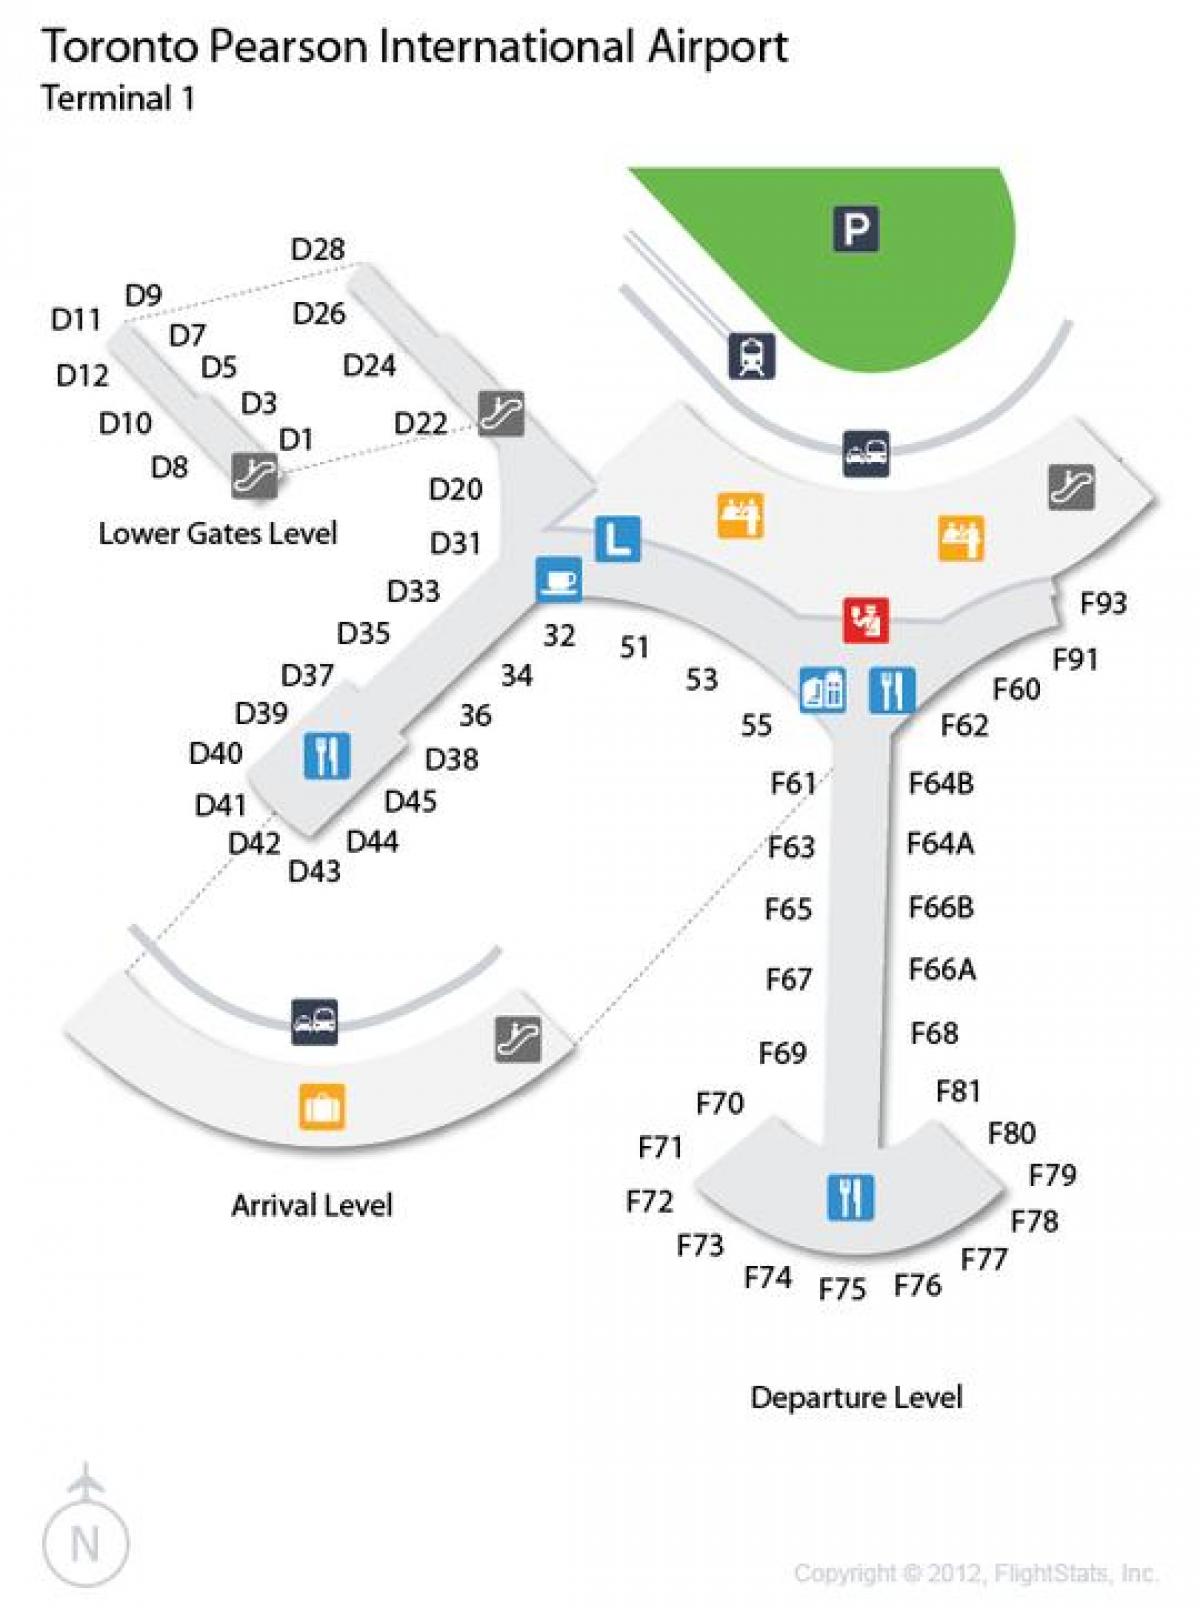 Χάρτης του Τορόντο Pearson αεροδρόμιο άφιξης και αναχώρησης επίπεδο